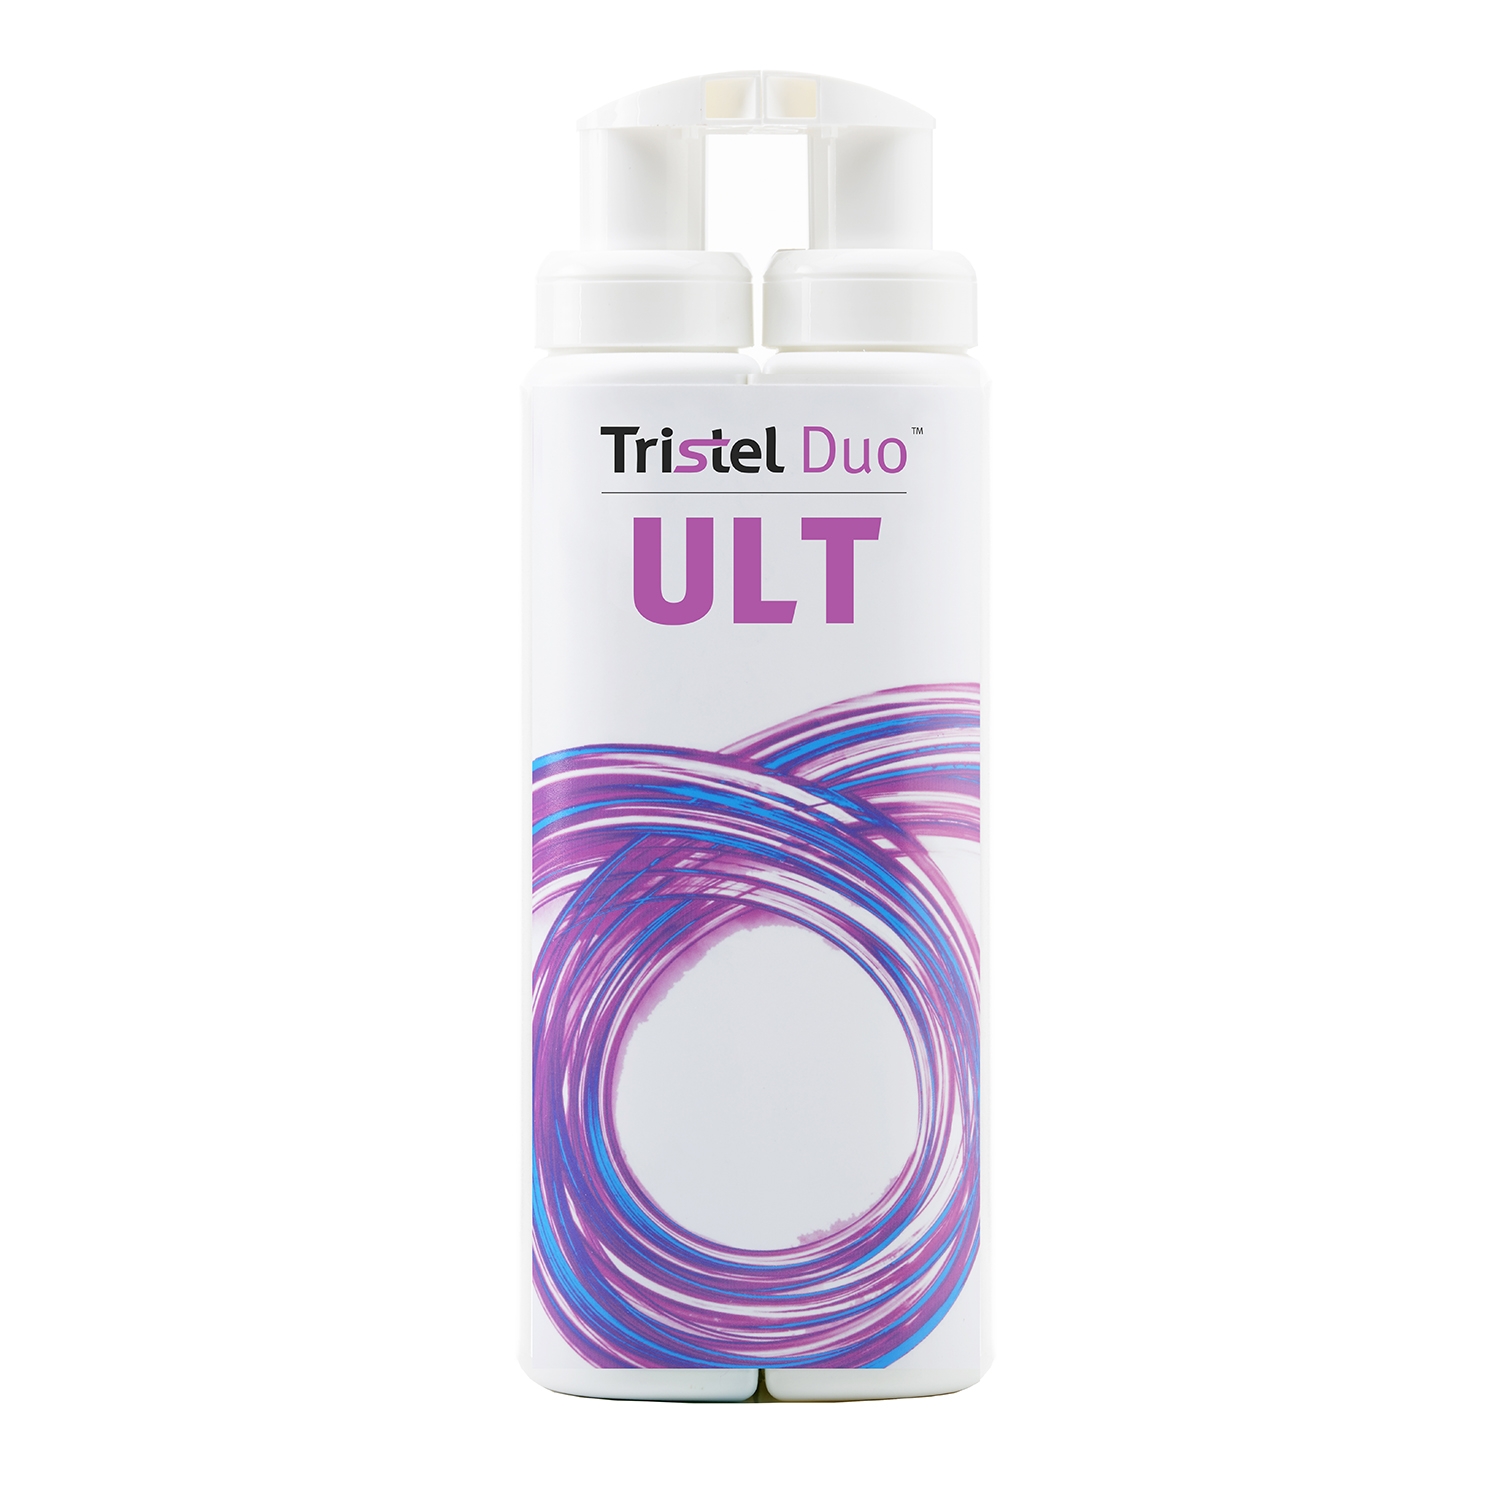 Tristel Duo ULT desinfectie invasieve probes/sondes - 250 ml